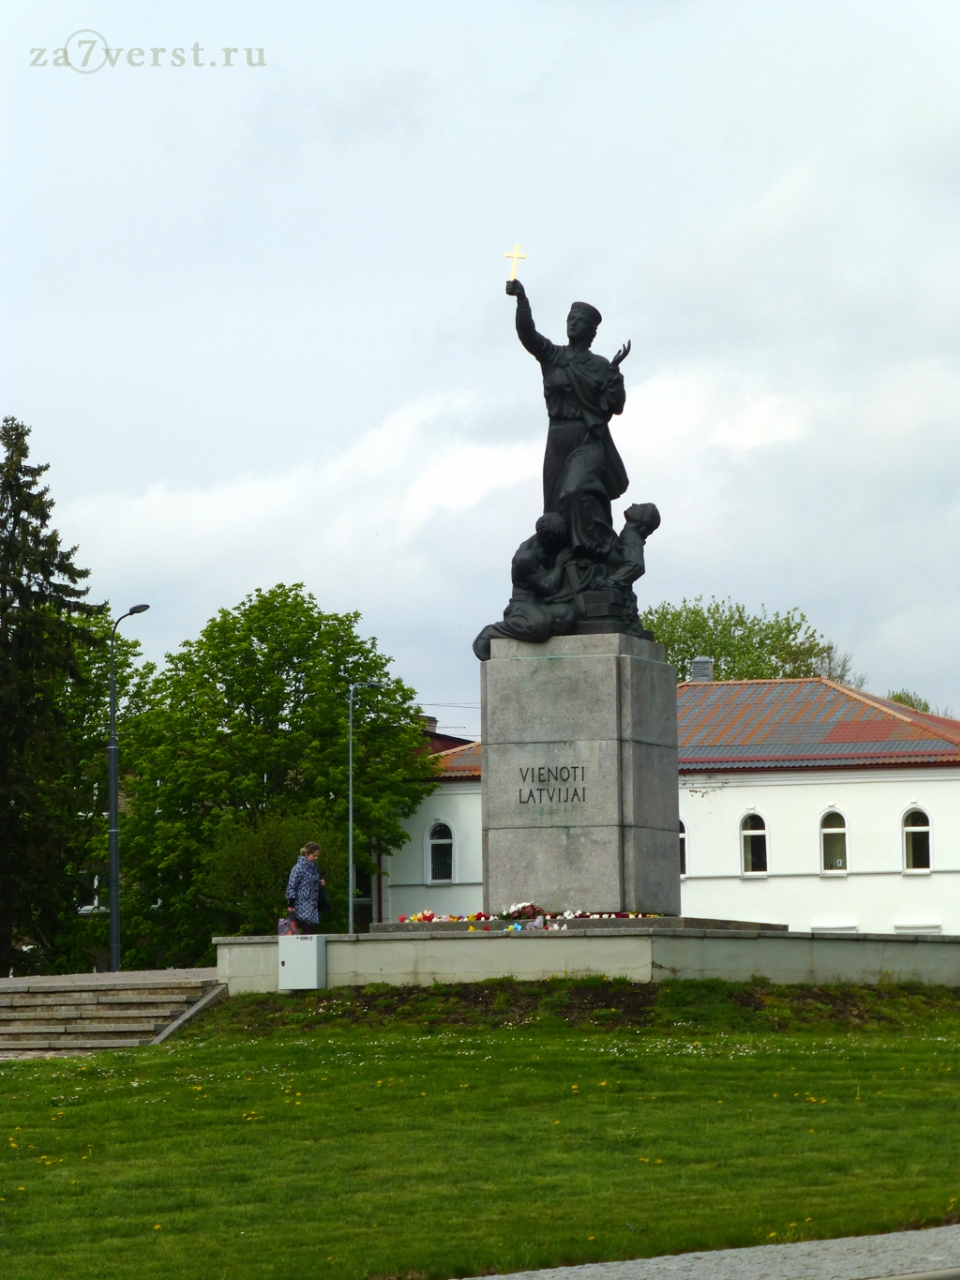 Резекне (Rezekne), Латвия